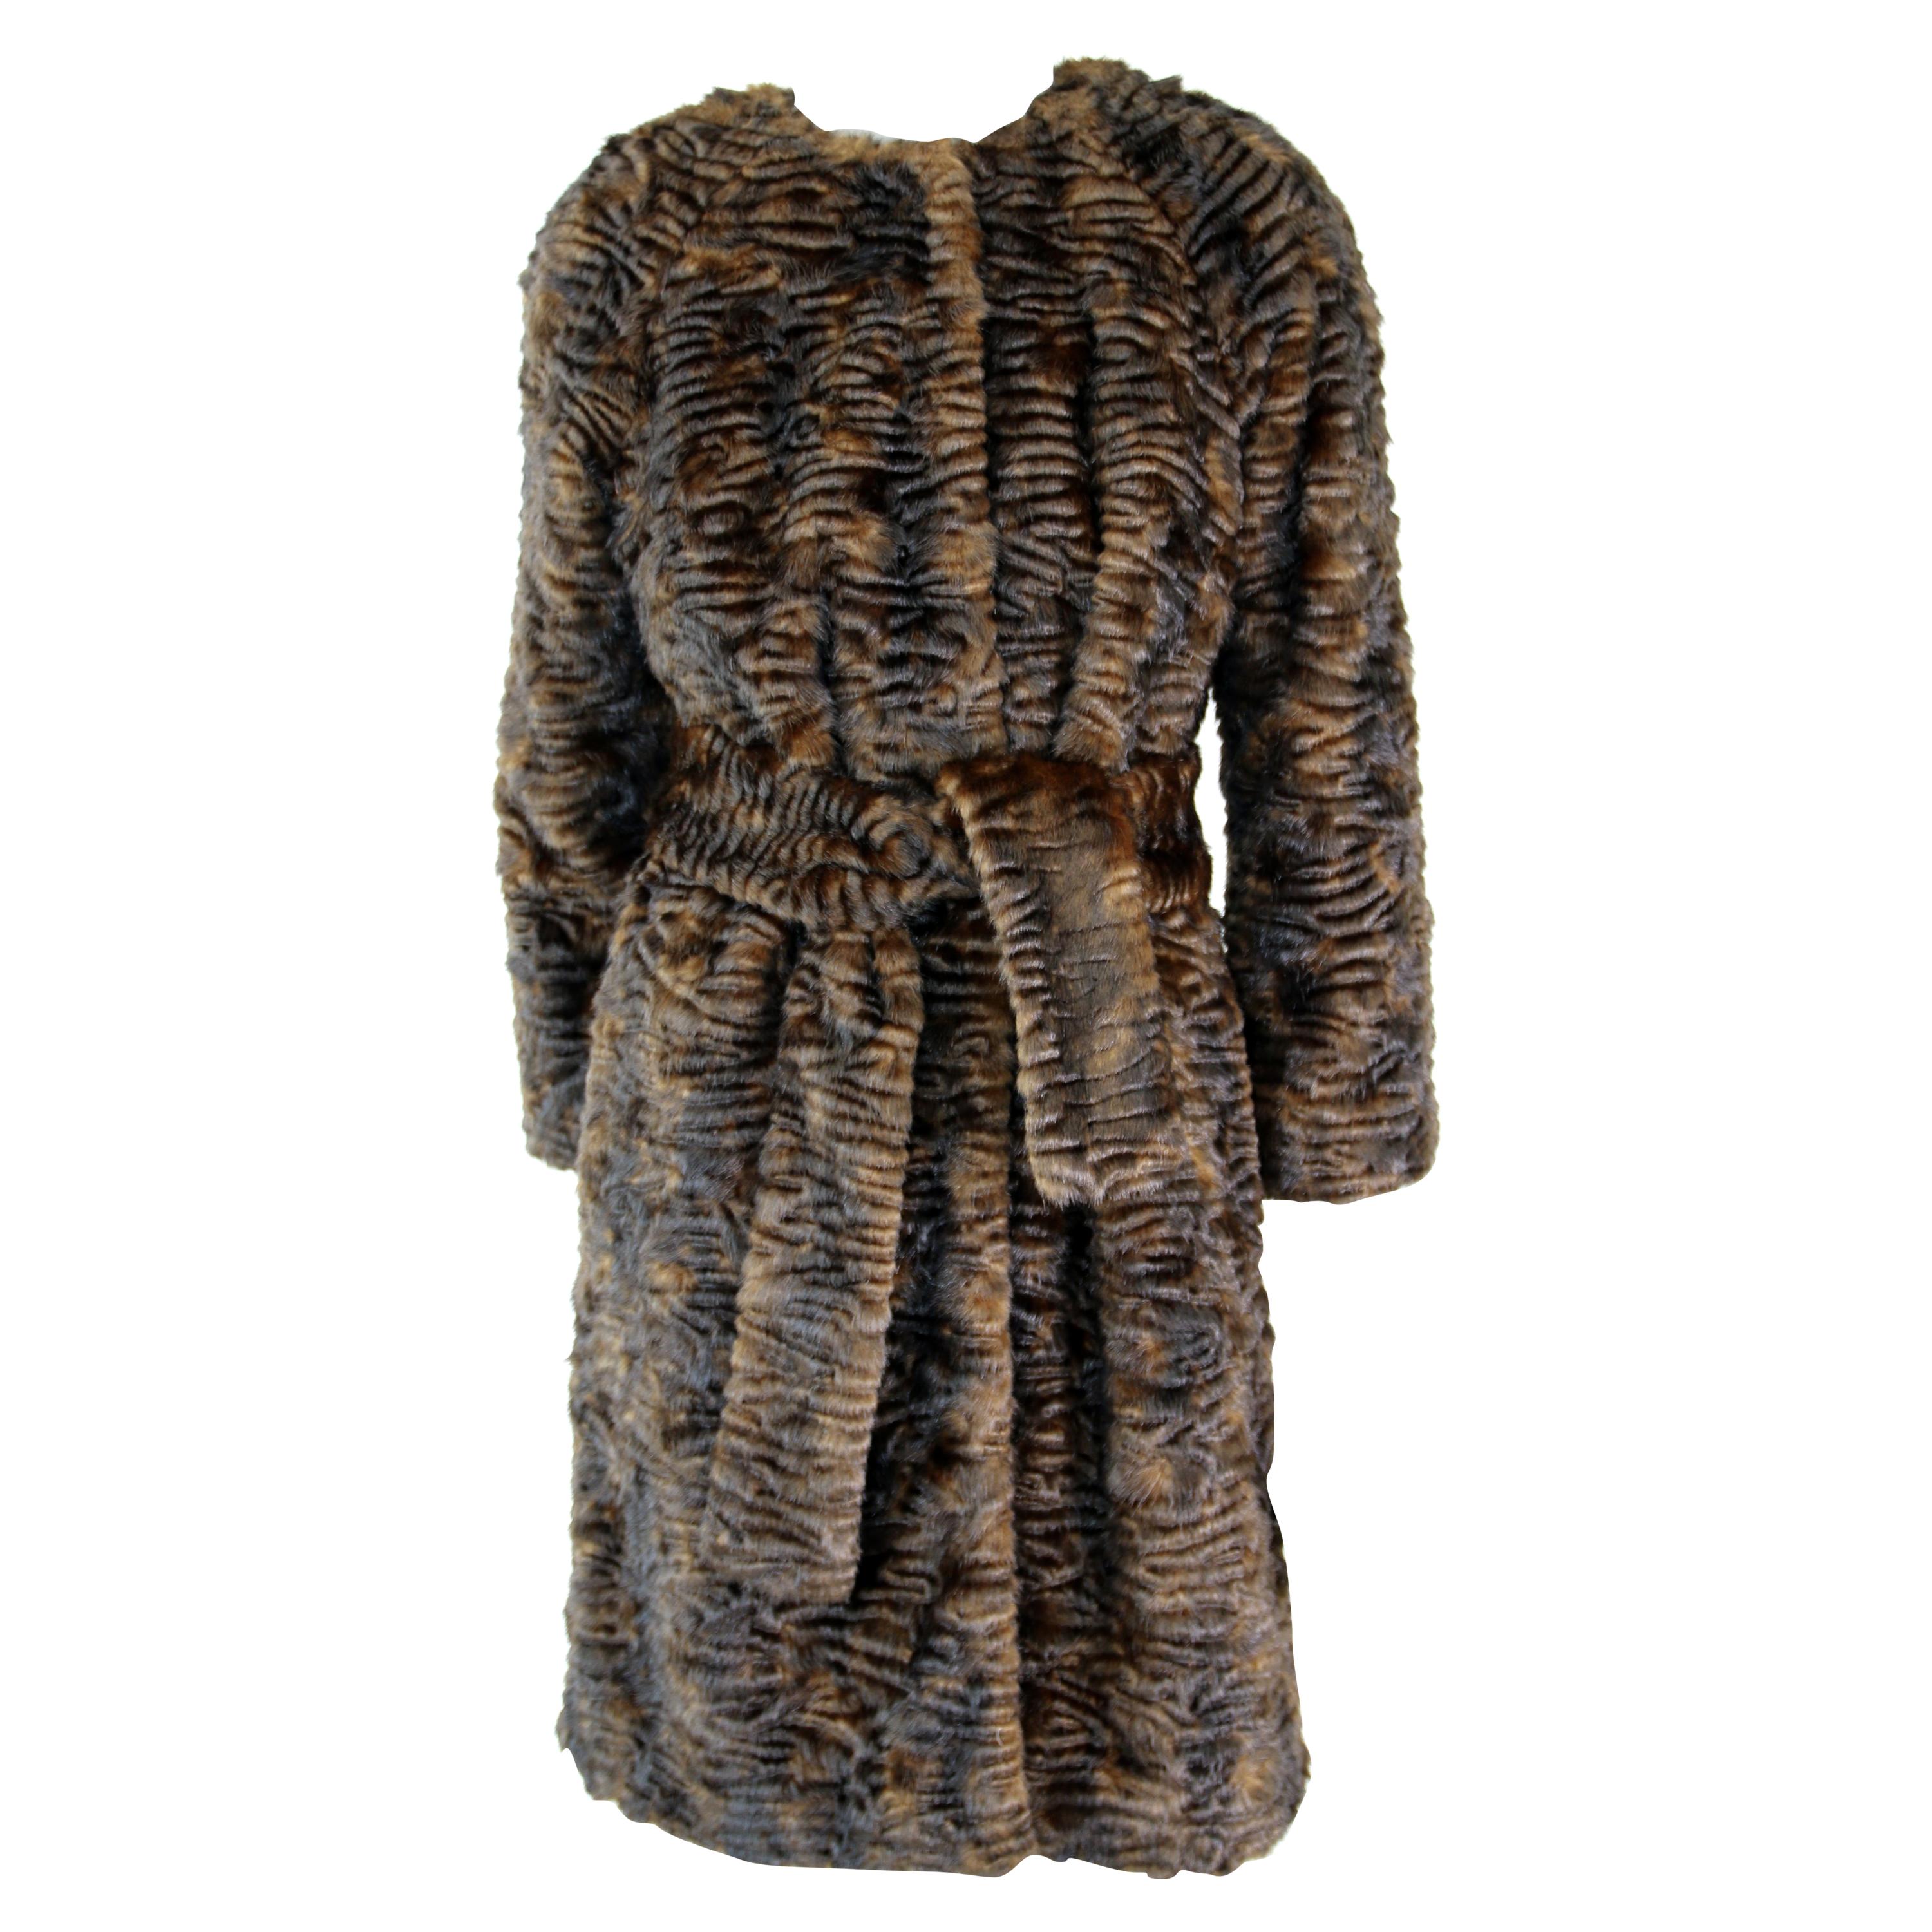 Pelush Brown Astrakhan Faux Fur Coat With Belt - Persian Lamb Fake Fur Coat - XS For Sale